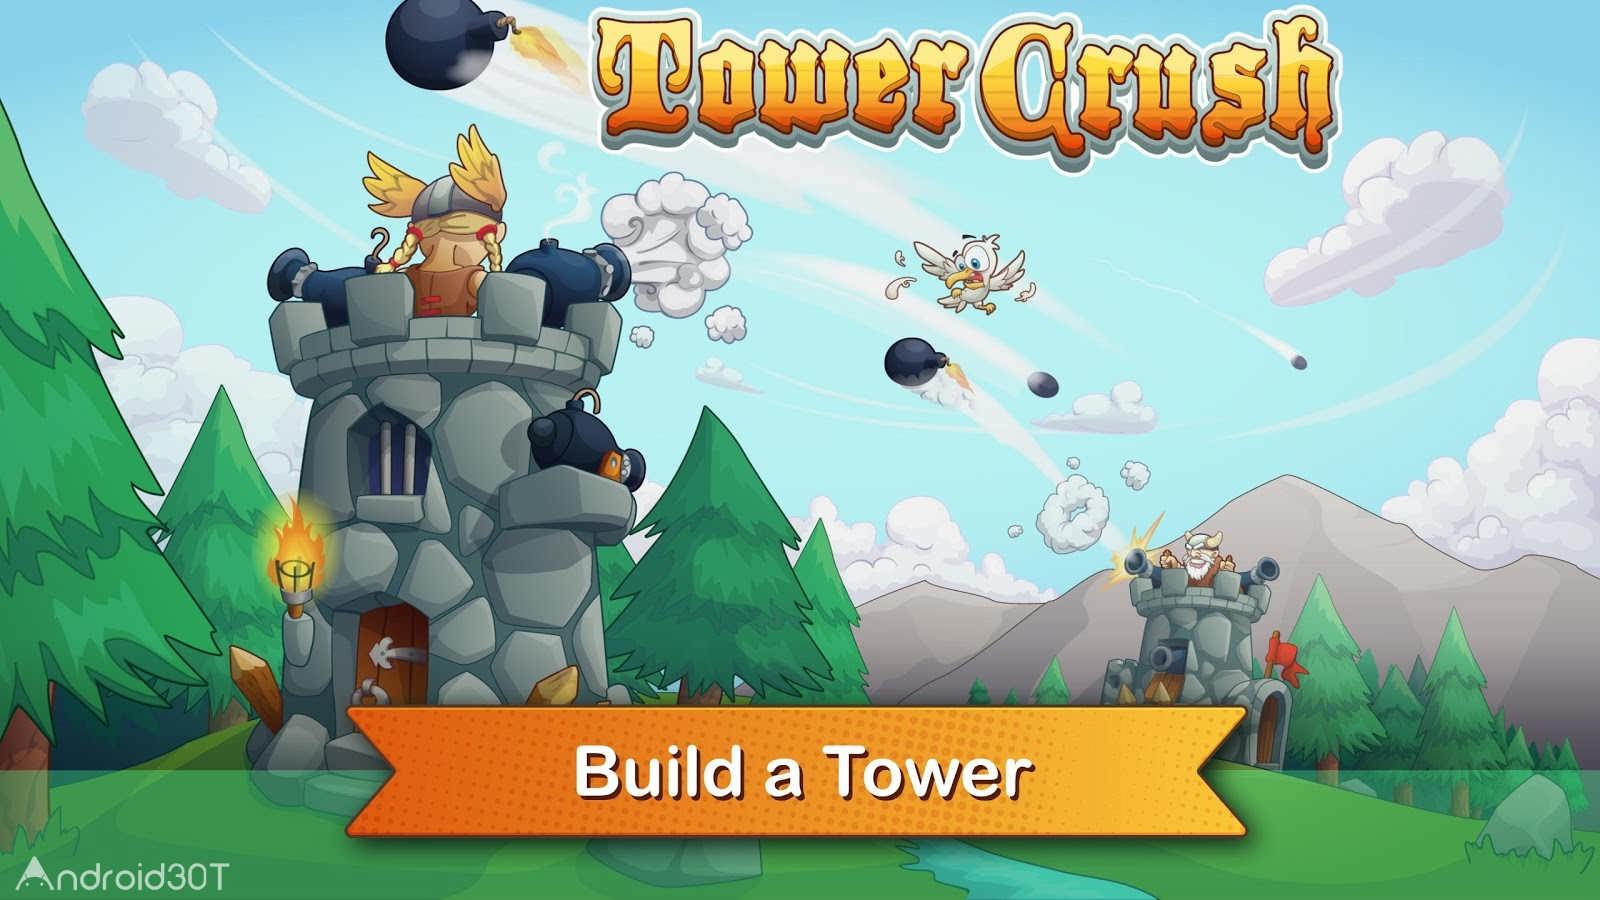 دانلود Tower Crush 1.1.45 – بازی آرکید شکستن برجها اندروید